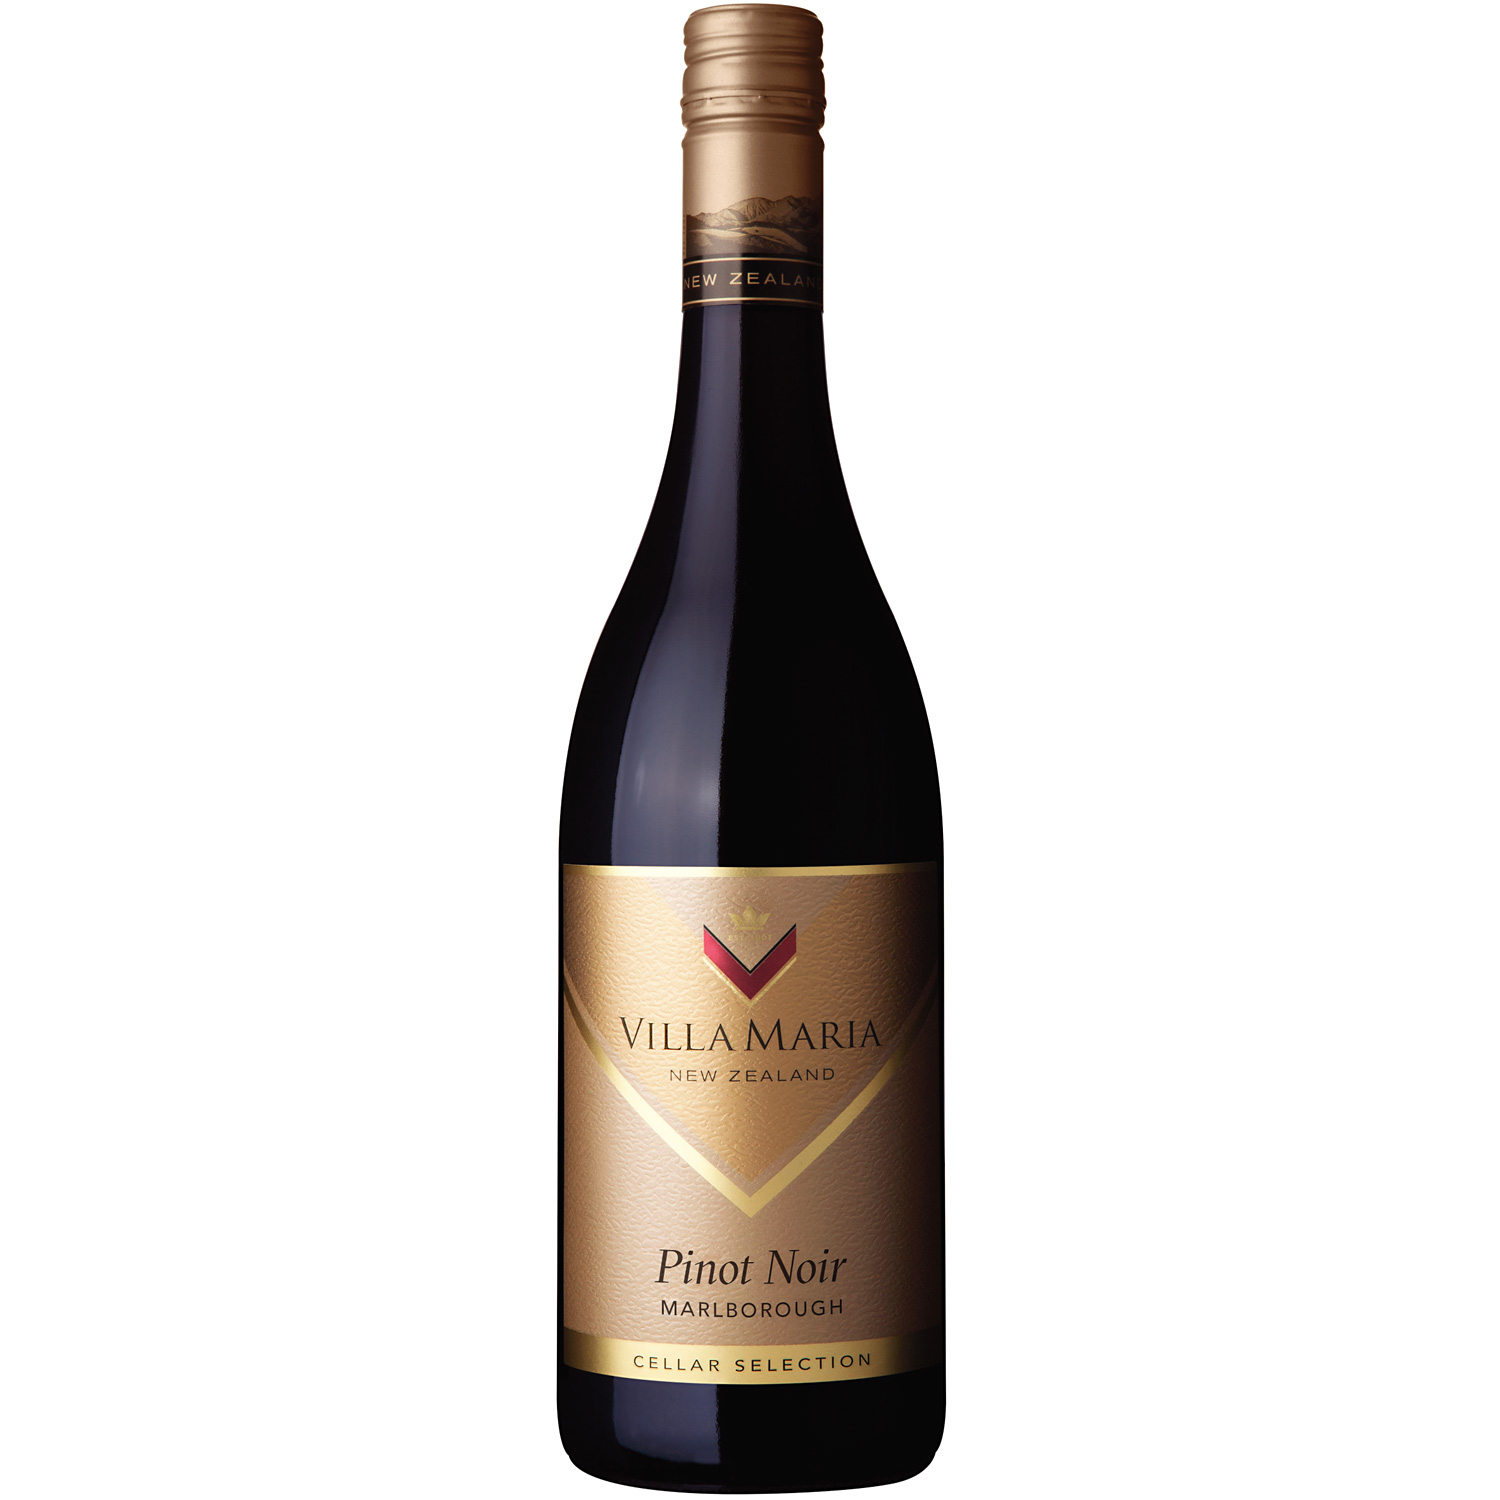 Neuseeländischer Rotwein Villa Maria Cellar Selection Pinot Noir Marlborough  2018 | Vinum Nobile